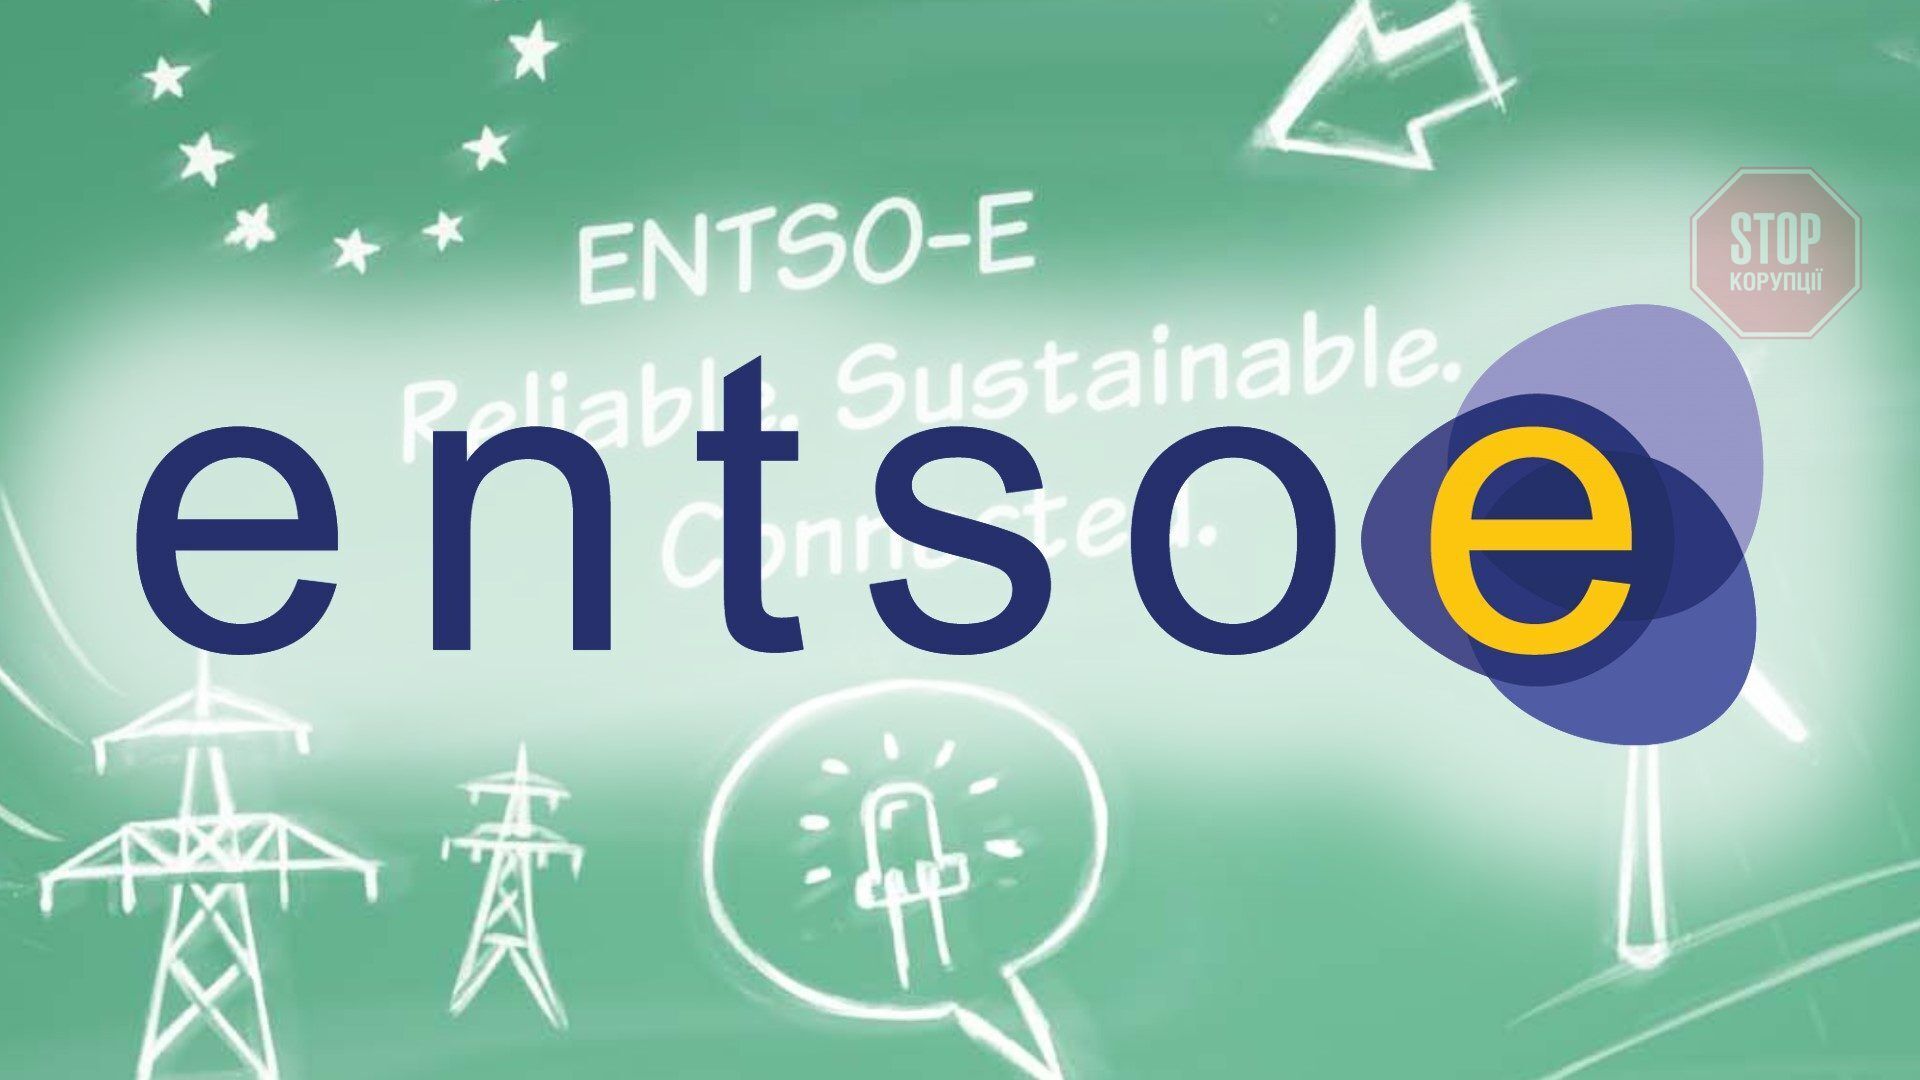  Електромережі 36 країн Європи входять у енергосистему ENTSO-E. Фото з мережі